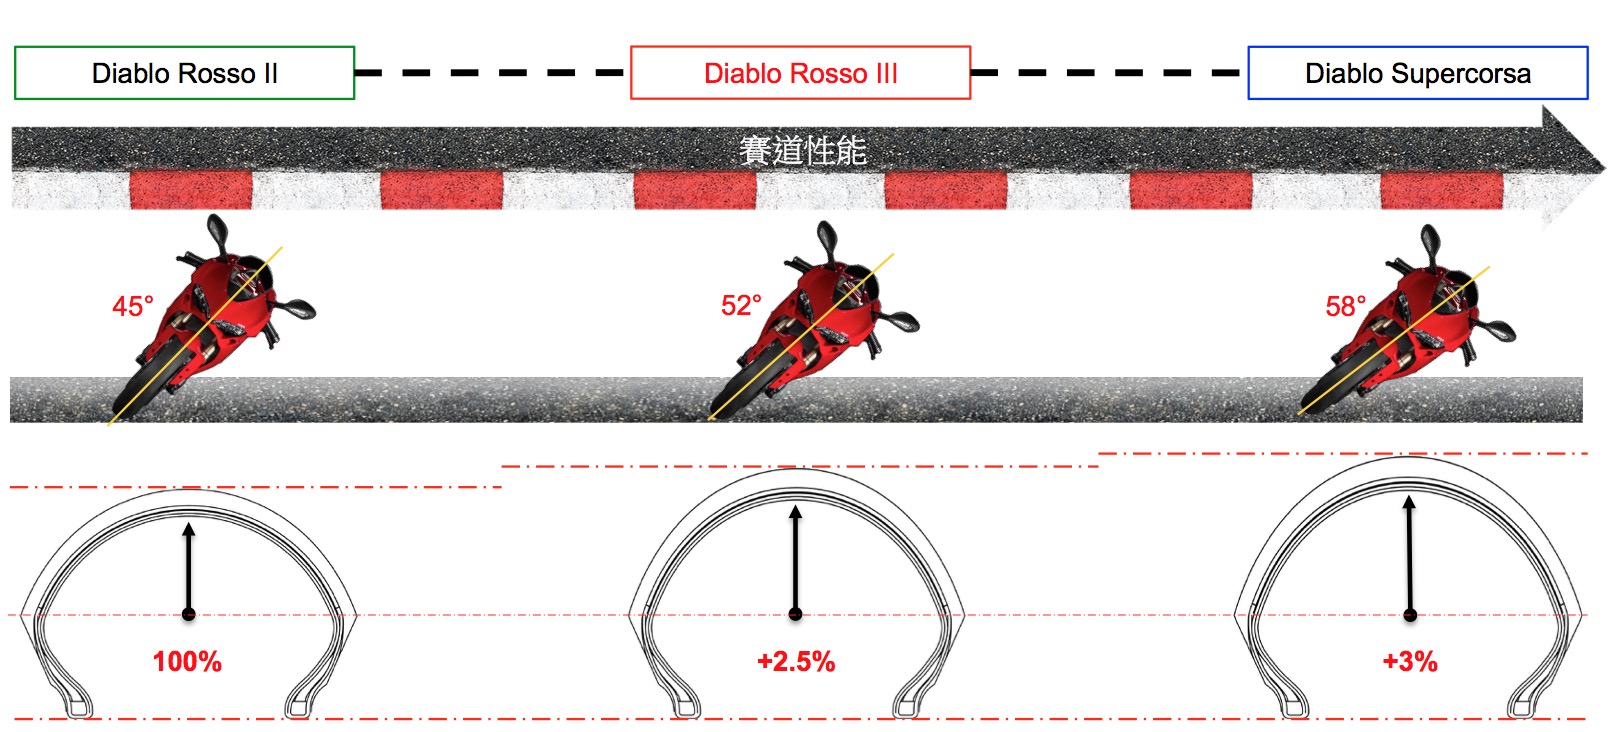 全新的胎型讓ROSSO III 極限傾角一舉提昇至52度，性能表現更貼近目前PIRELLI產品線中的頂級運動胎款DIABLO SUPERCORSA(大閃電)。